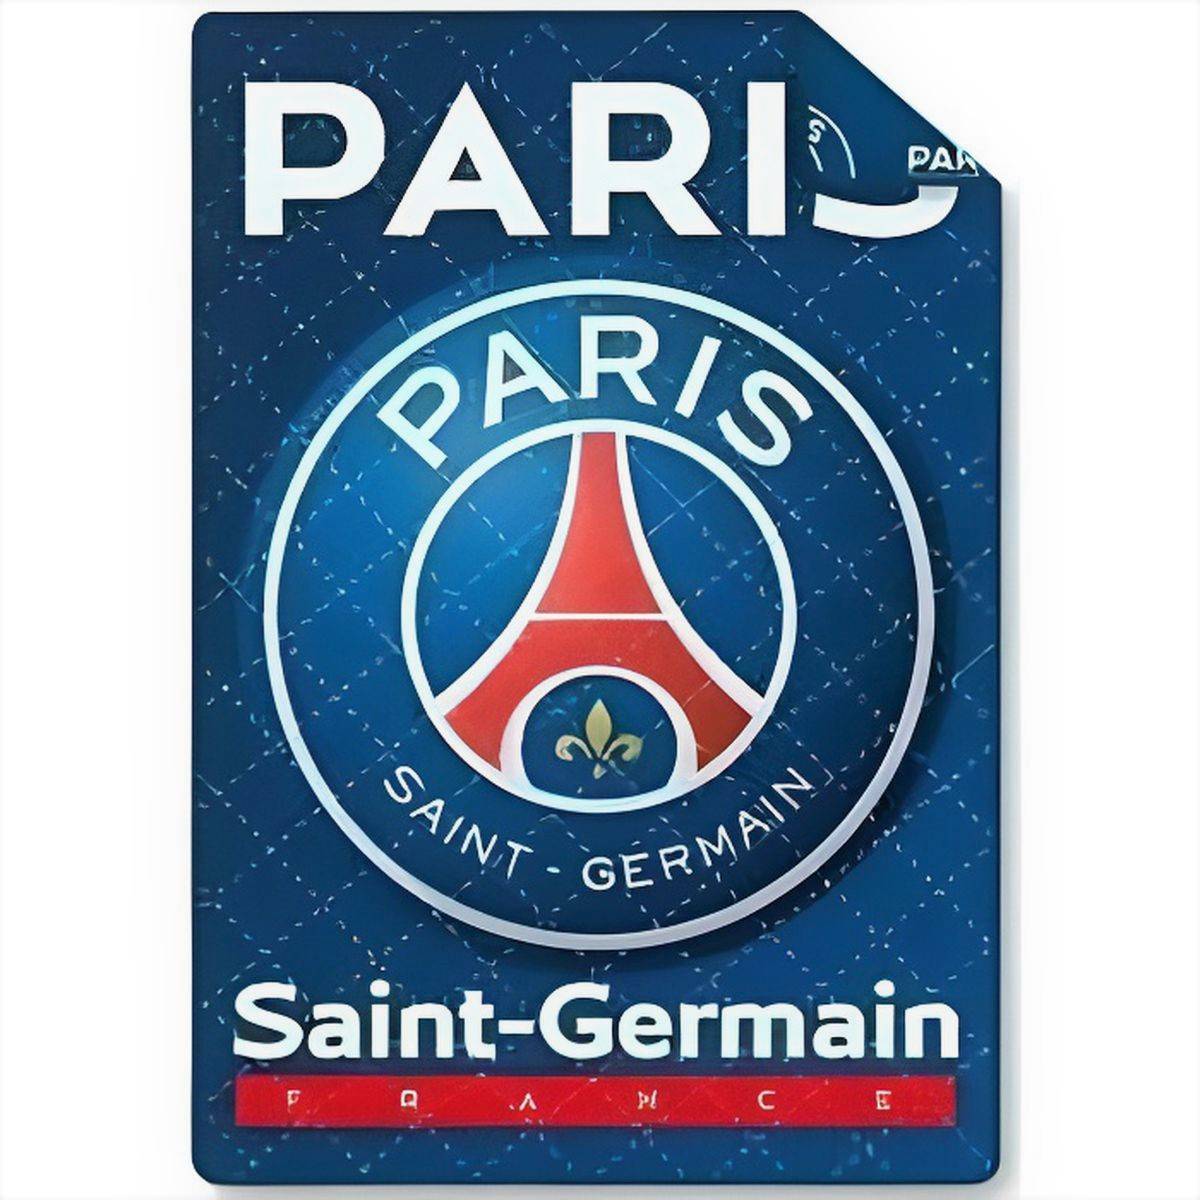 Couette imprimé Paris Saint Germain PSG 140x200cm